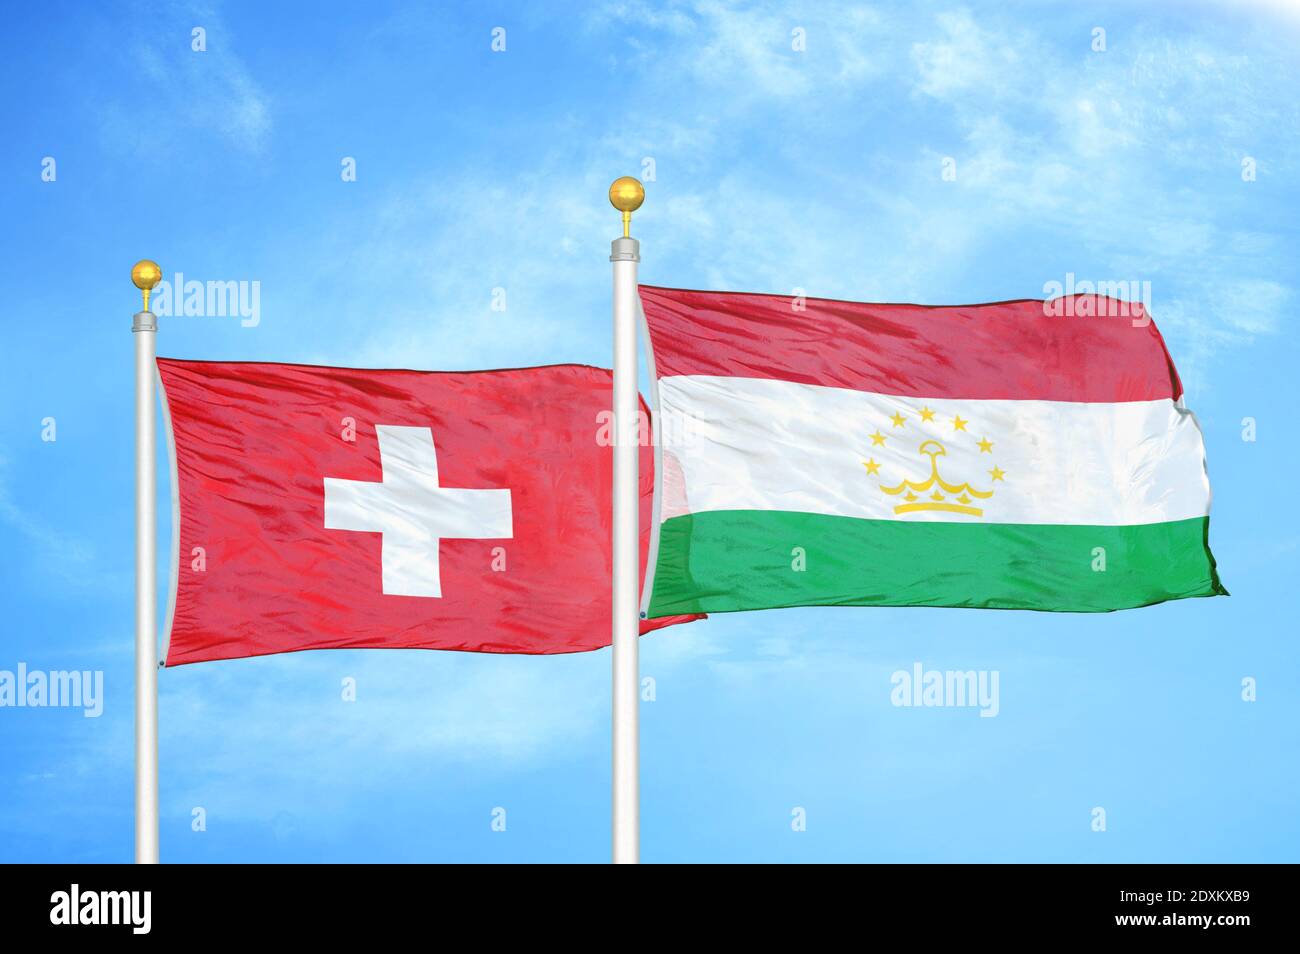 La Svizzera e il Tagikistan due bandiere su pali e cielo blu Foto Stock